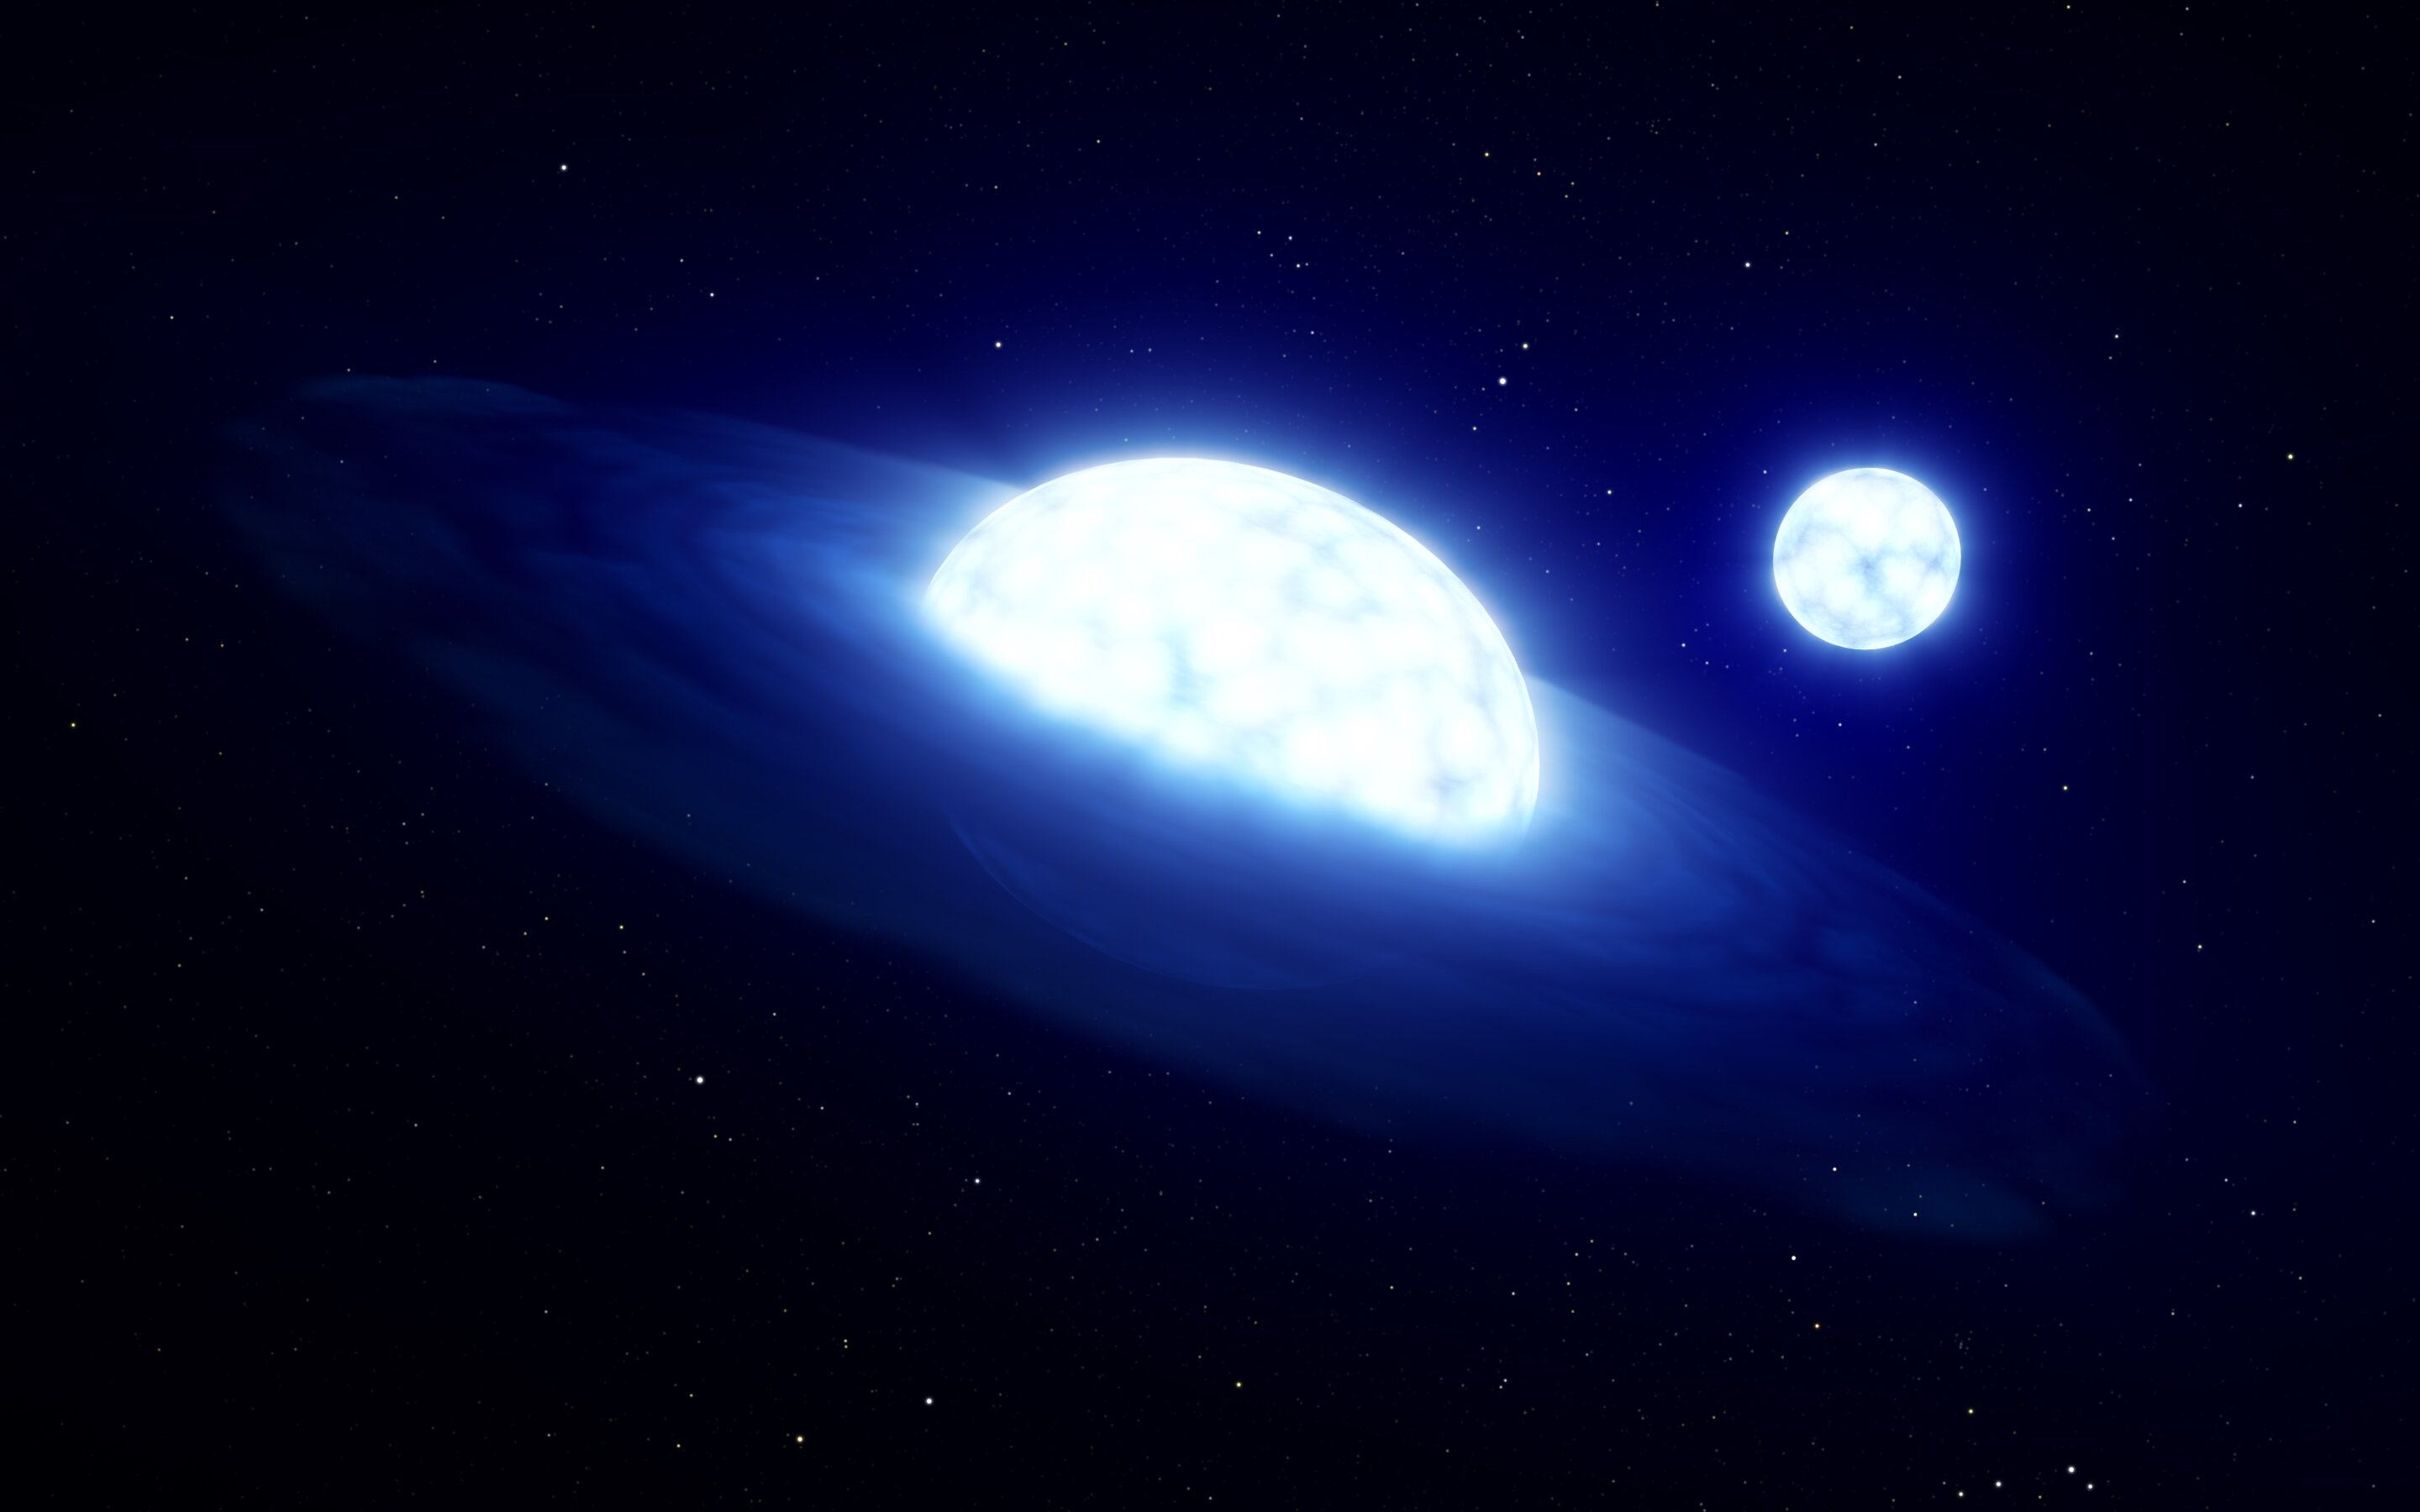 La scoperta della “tripla stella” rivoluzionerà la comprensione dell’evoluzione stellare